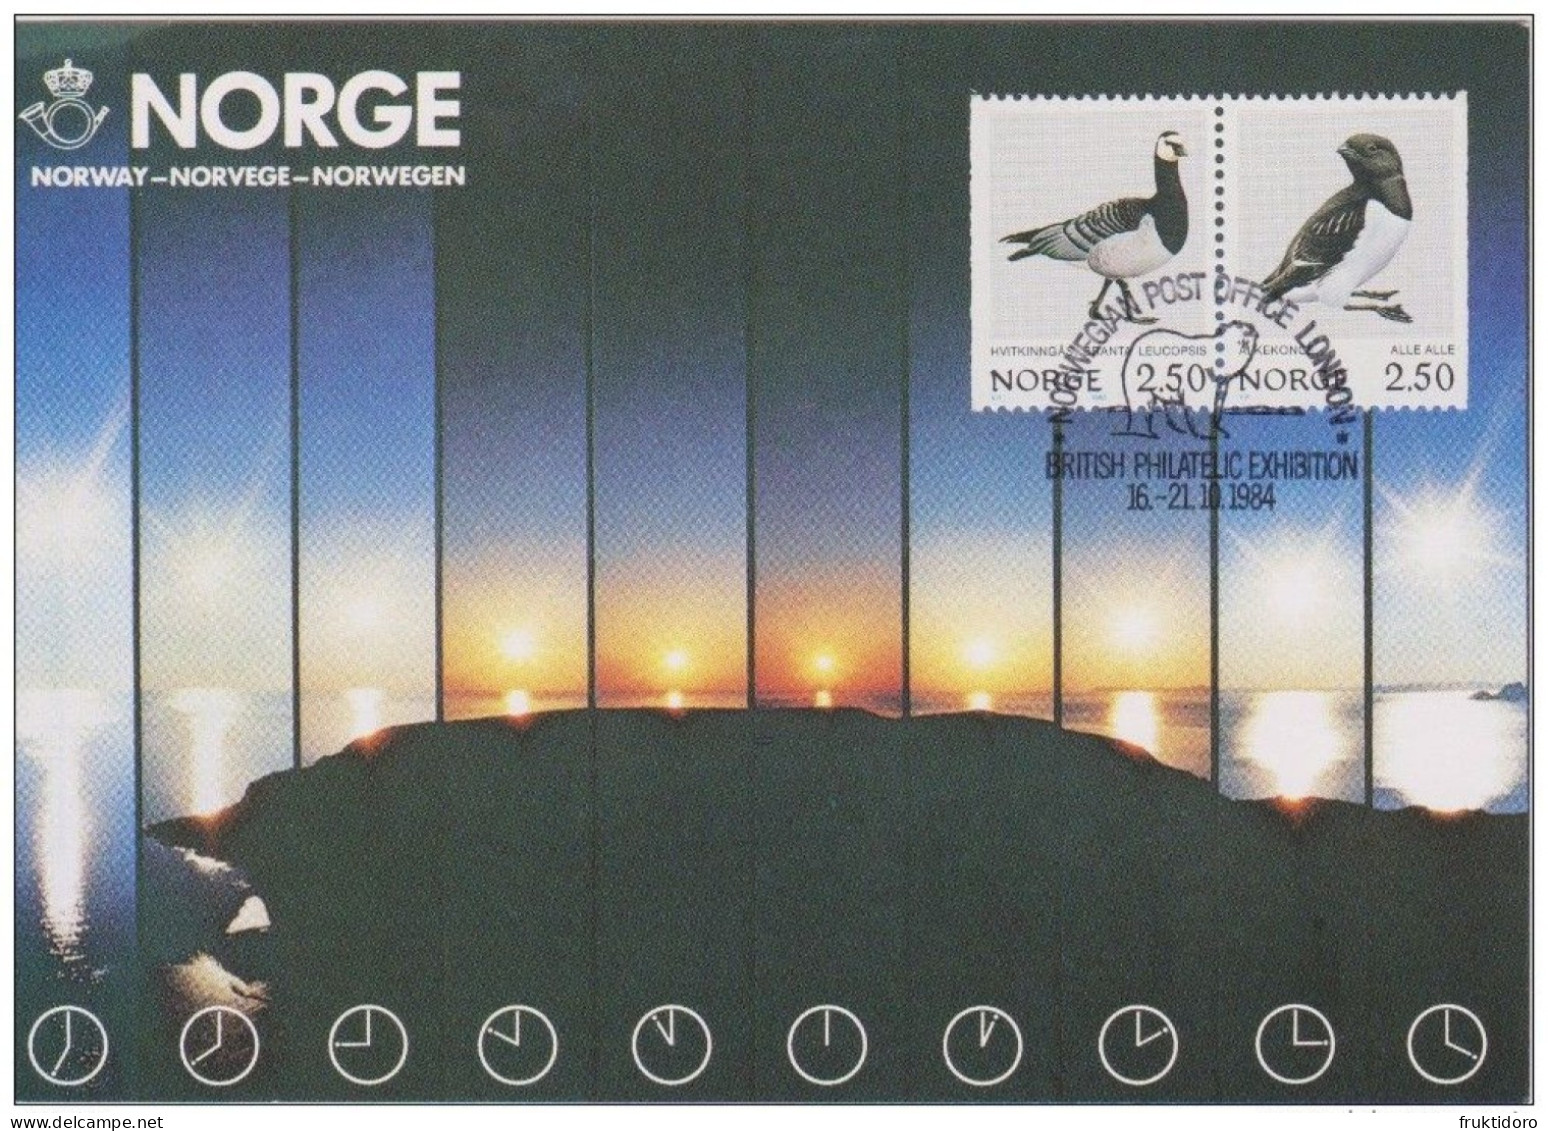 Norway Exhibition Cards 1984 With Mi 883-884 Birds - Barnacle Goose - Branta Leucopsis - Little Auk - Colecciones